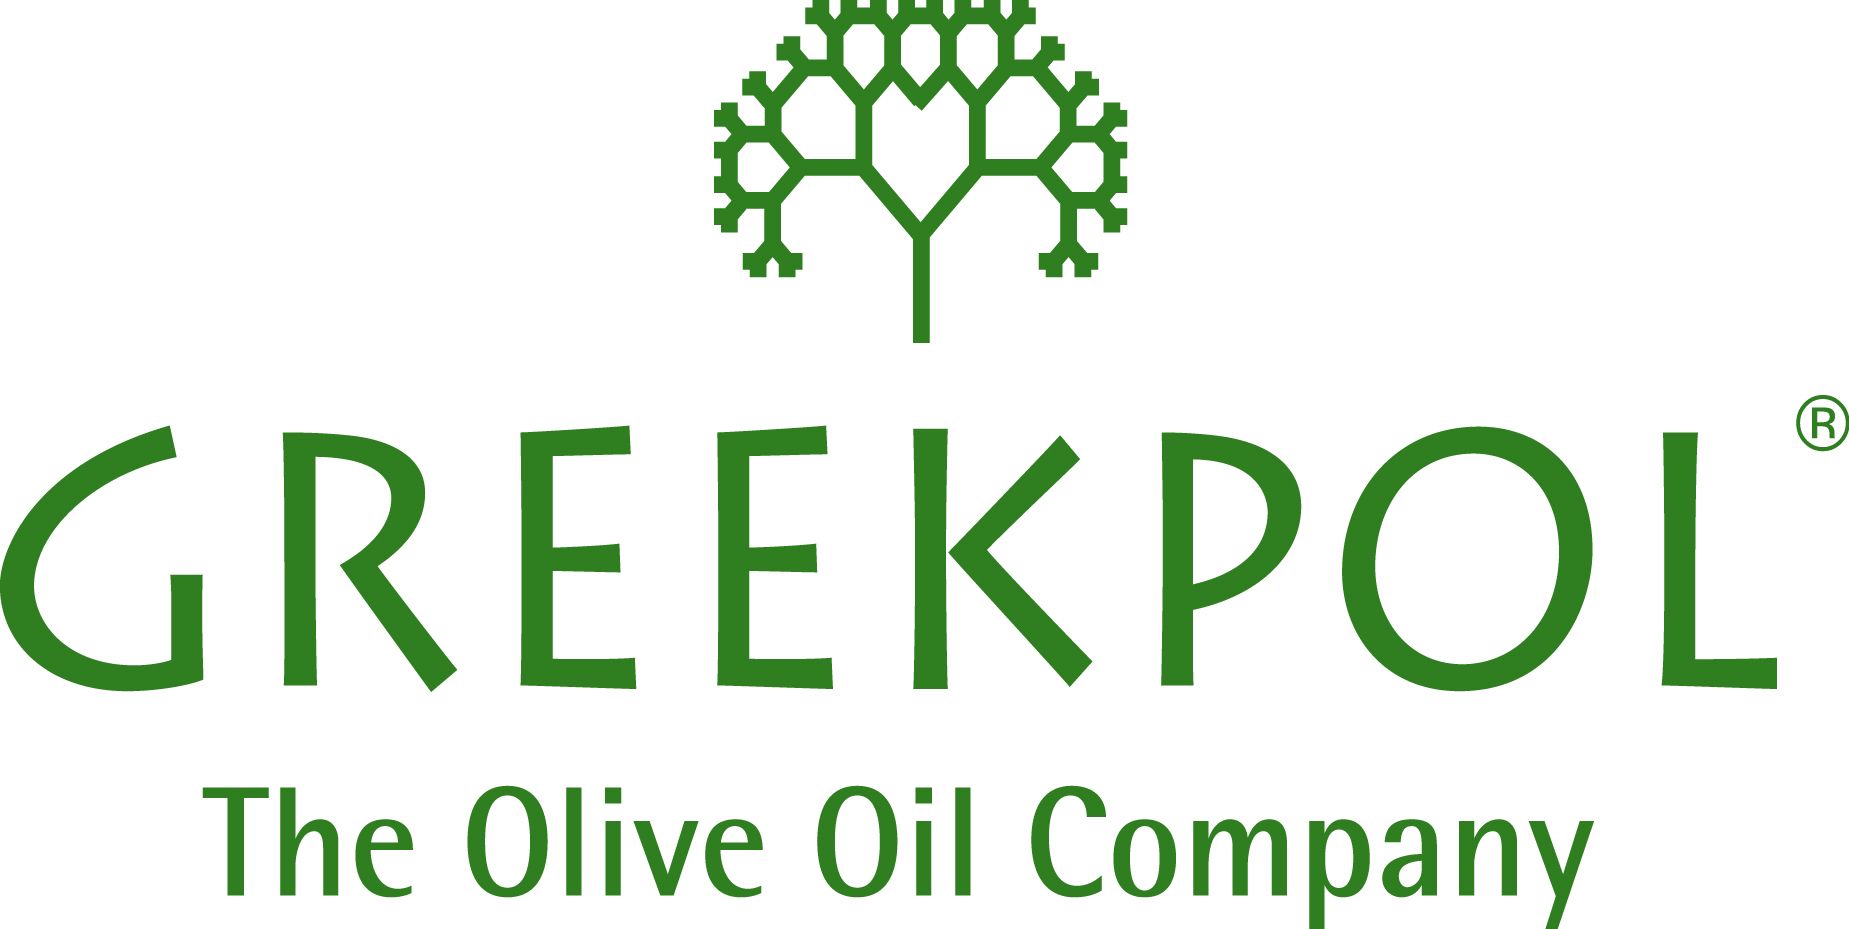 GREEKPOL Ltd logo